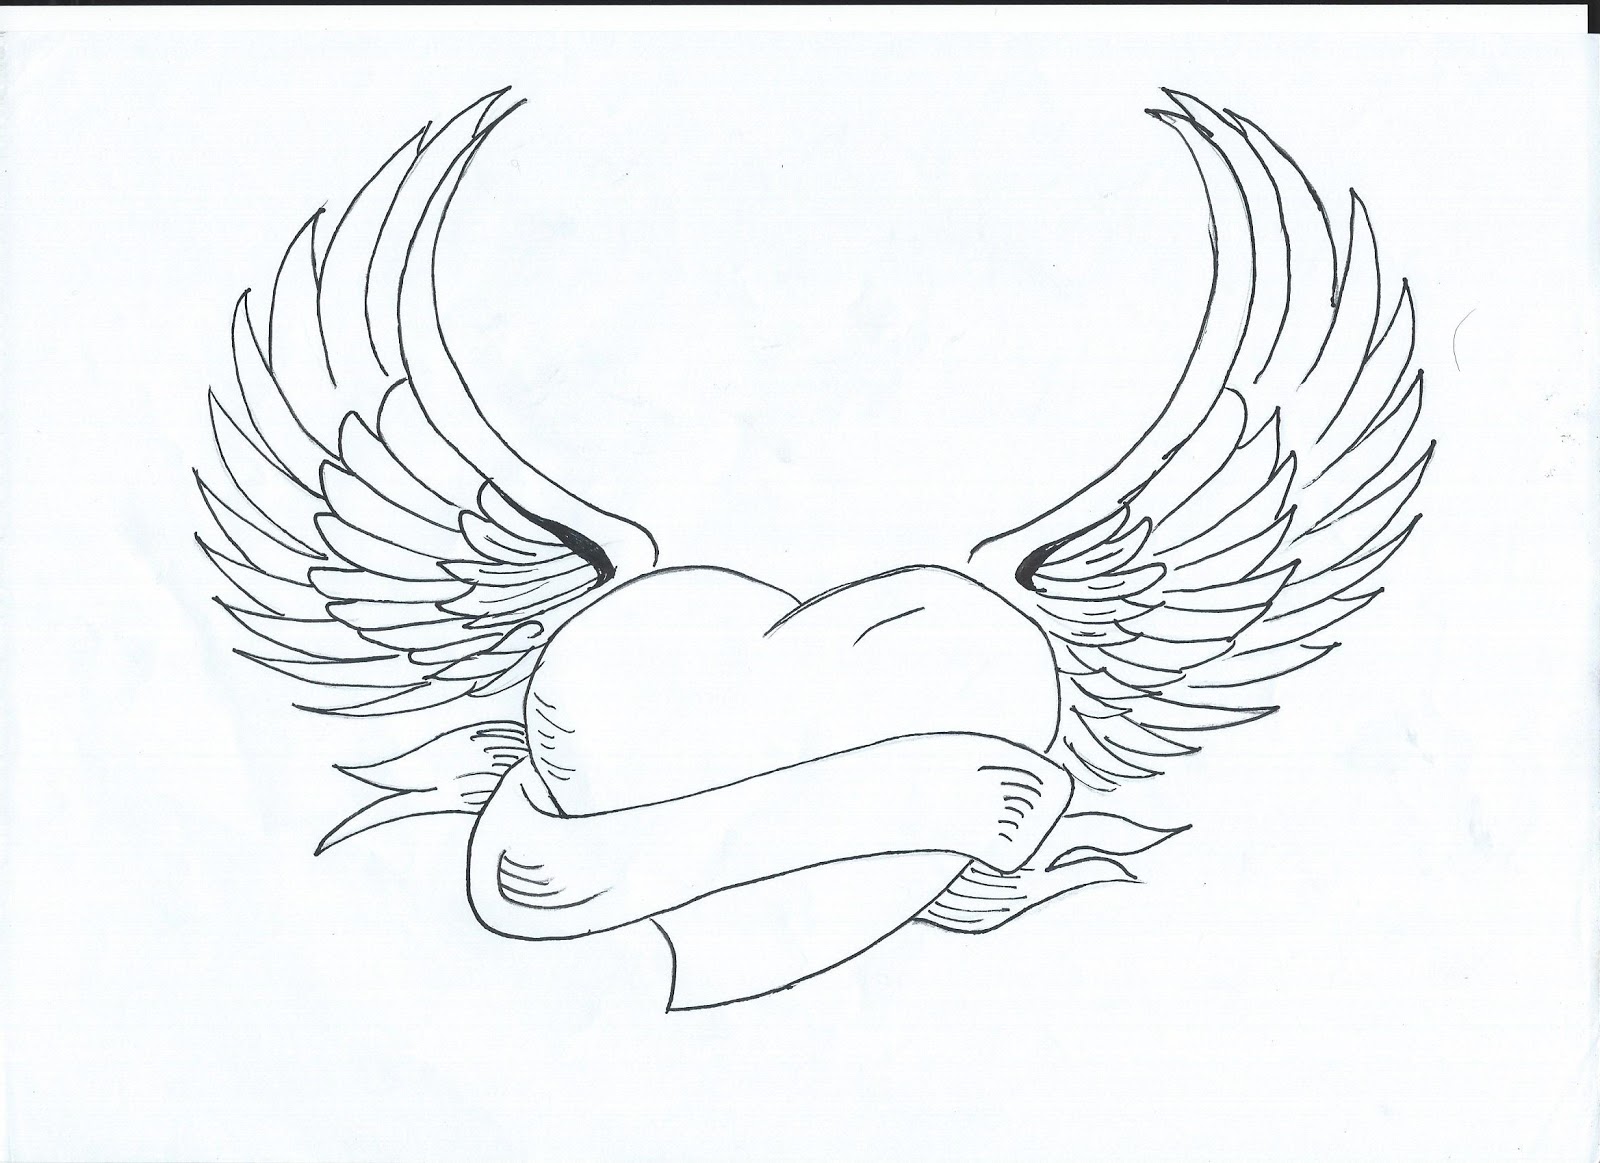 Corazones con alas para dibujar a lapiz - Imagui